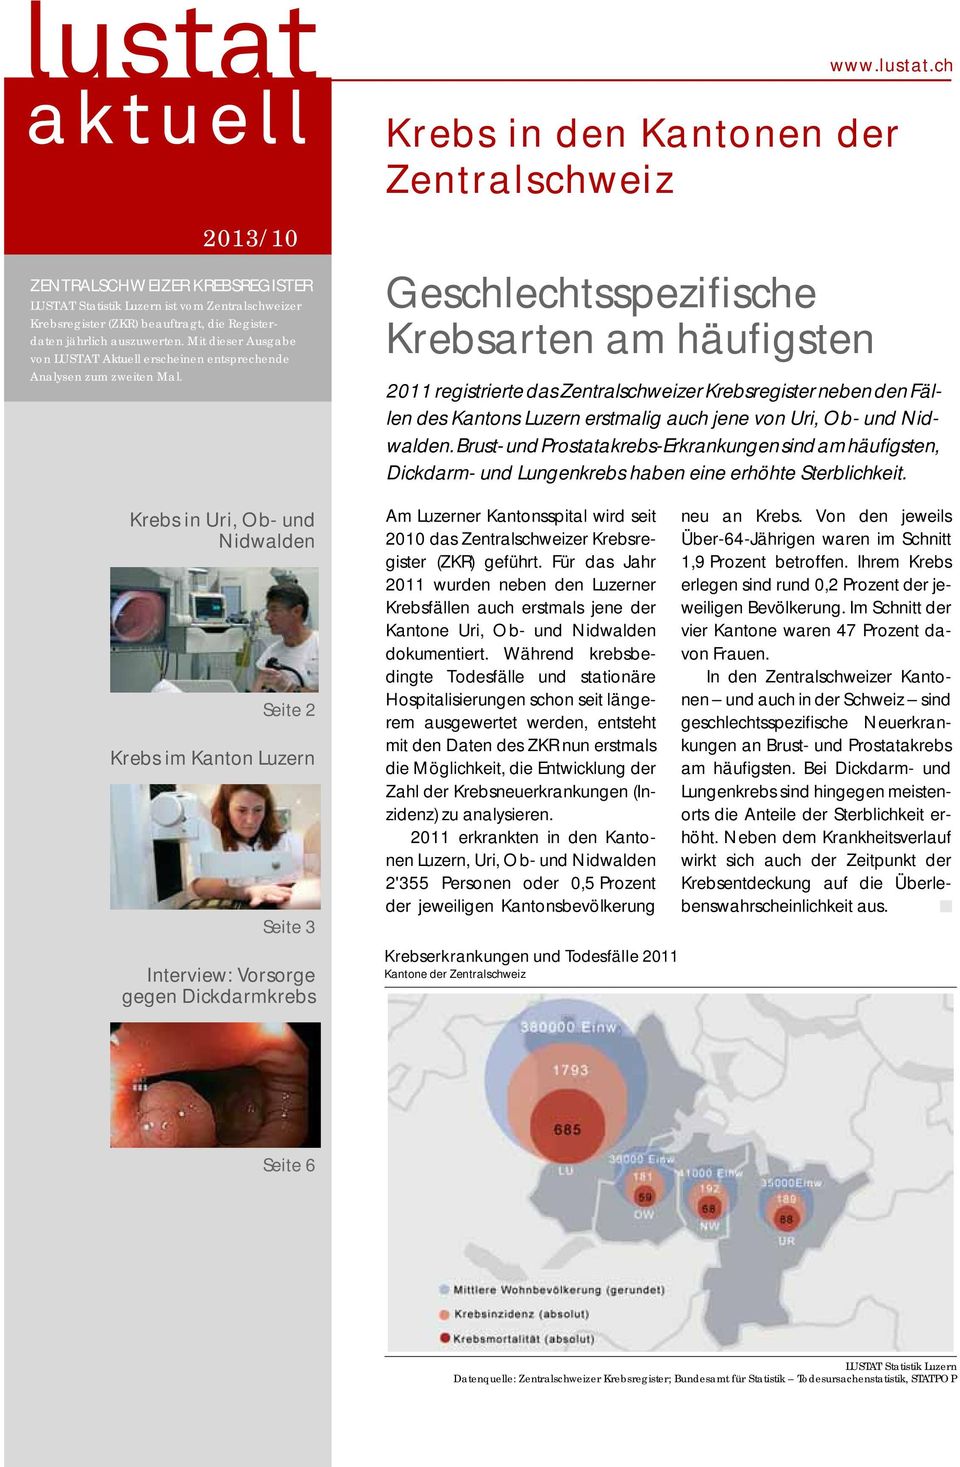 Krebs in Uri, Ob- und Nidwalden Seite 2 Krebs im Kanton Luzern Seite 3 Interview: Vorsorge gegen Dickdarmkrebs Geschlechtsspezifische Krebsarten am häufigsten www.lustat.